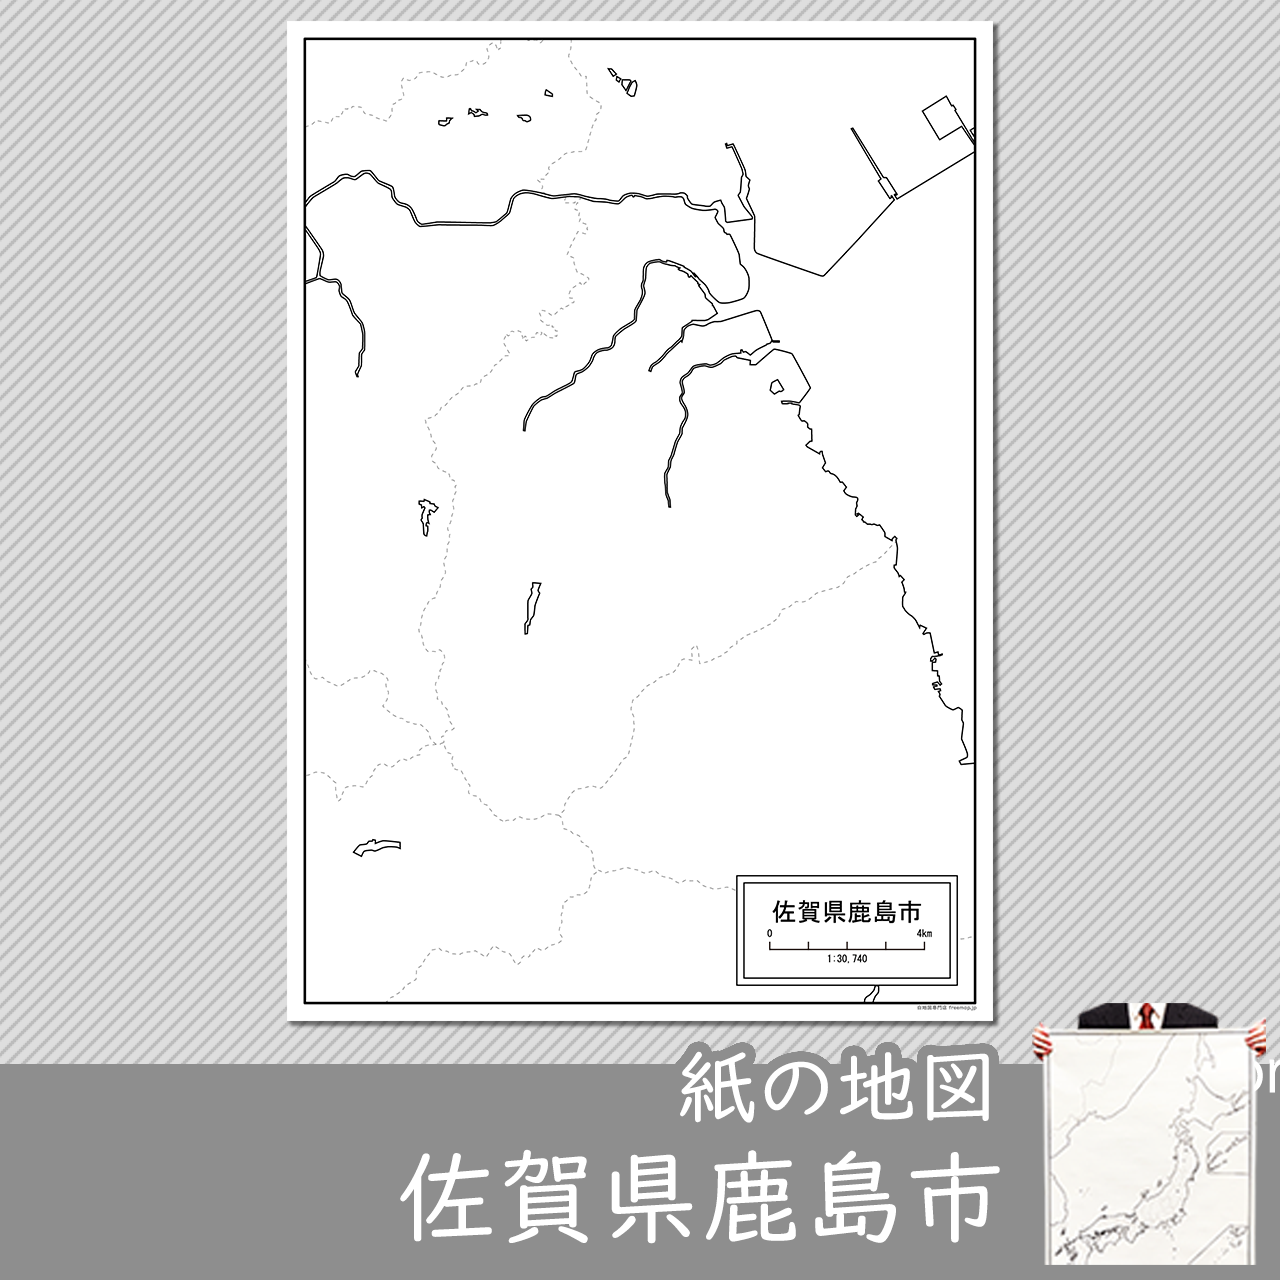 鹿島市の紙の白地図のサムネイル